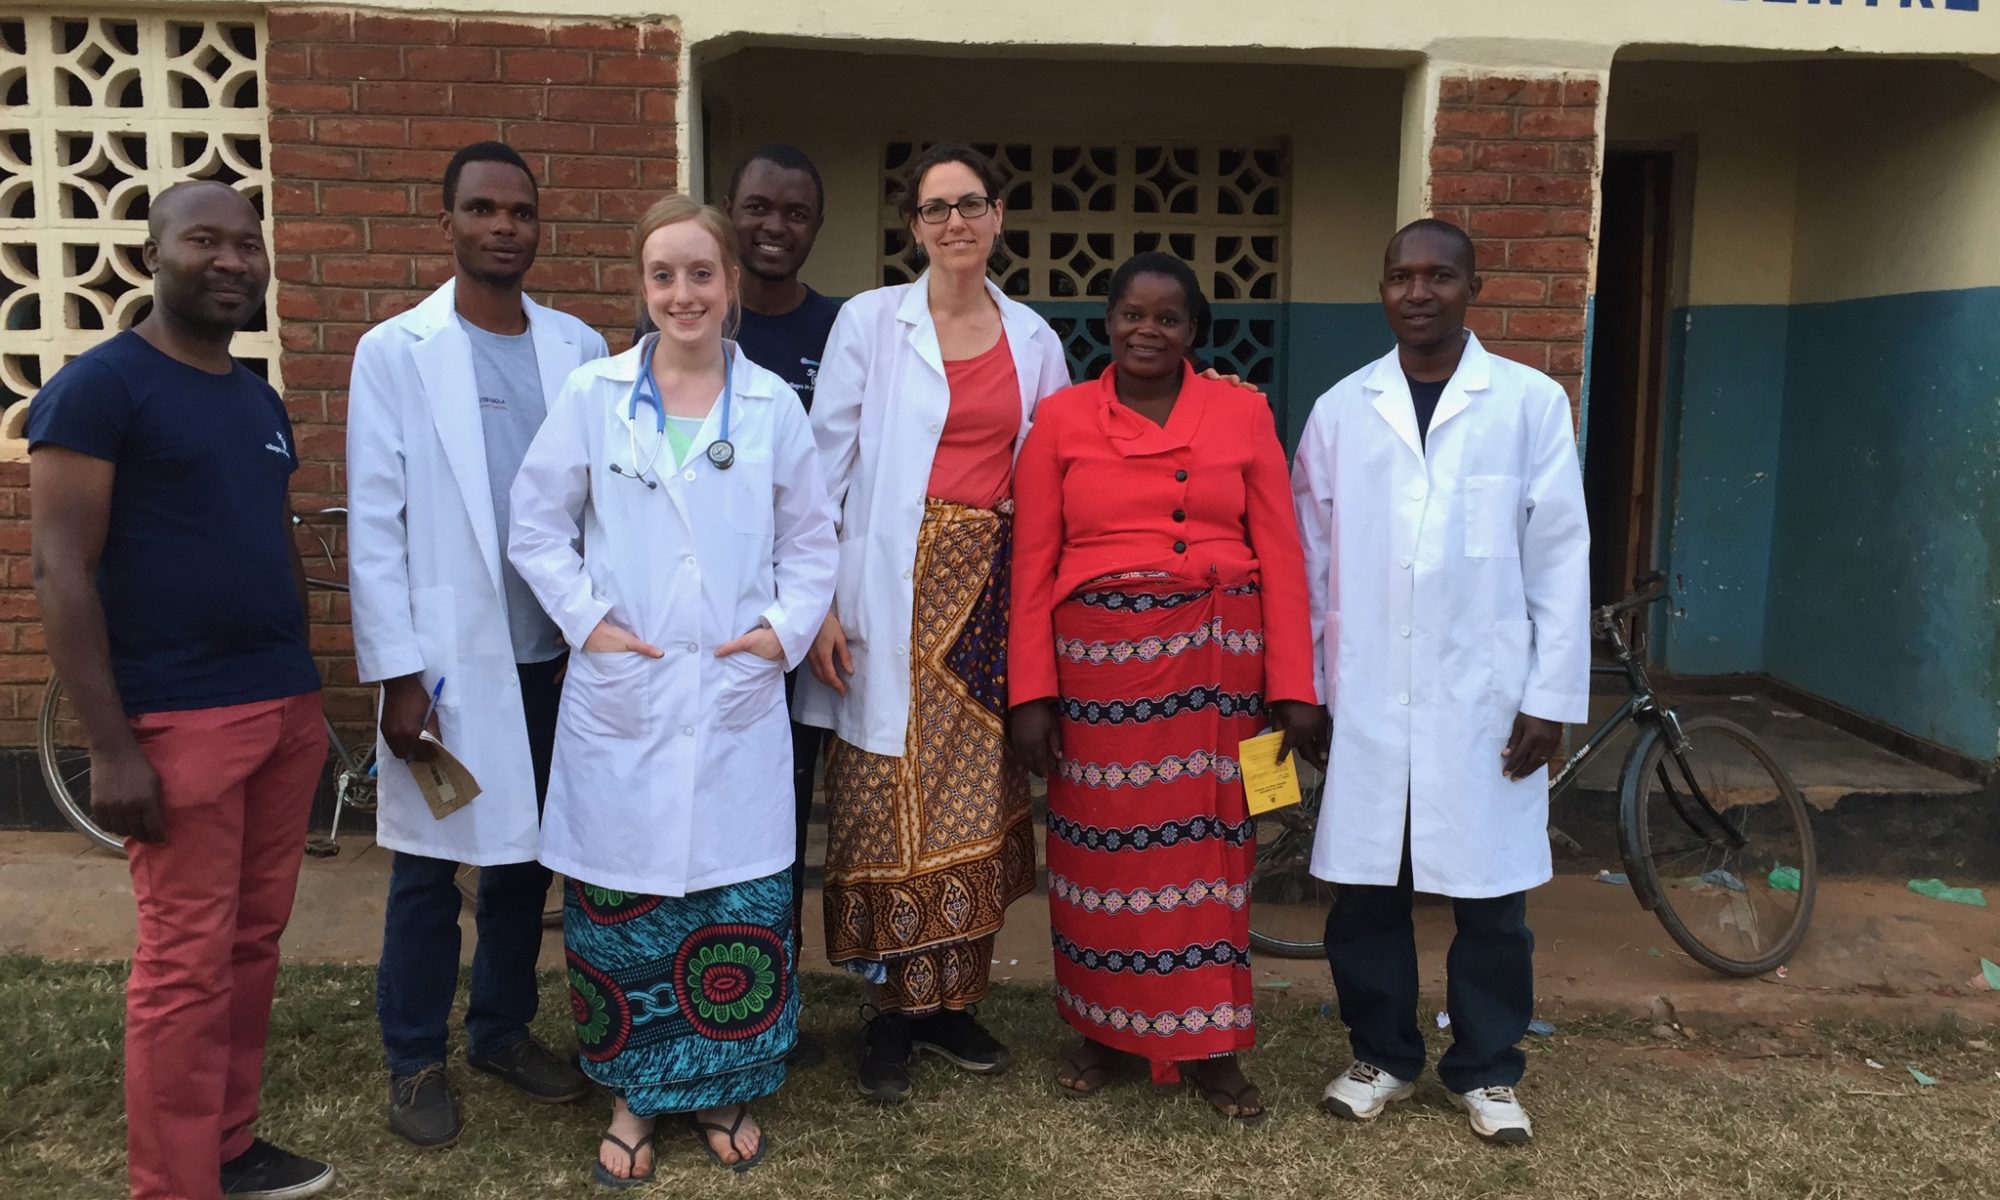 Dr. Barbara Edwards (Princeton) in Malawi May 2017